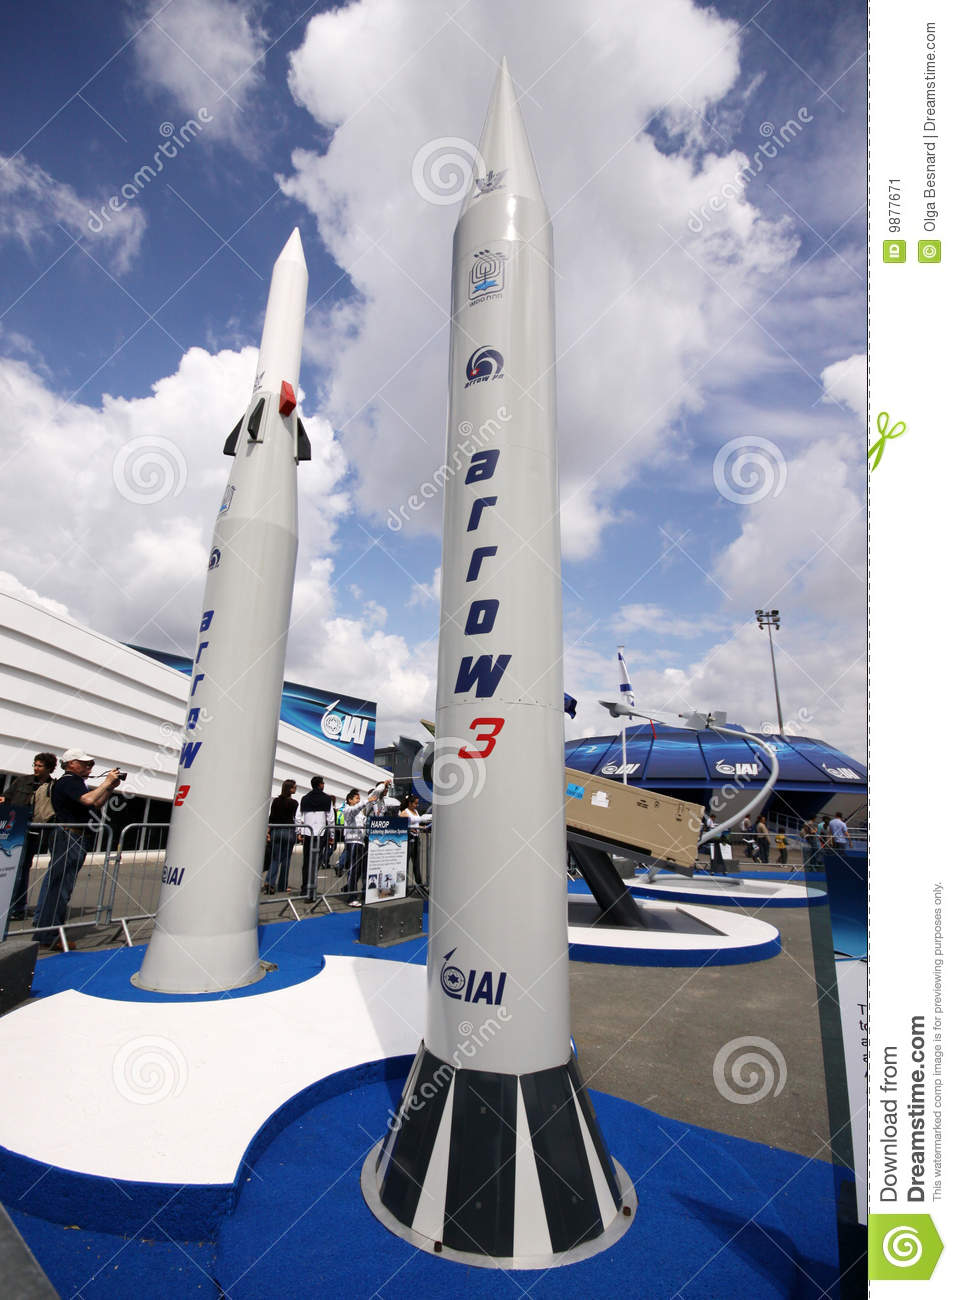 arrow-3-2-missile-display-9877671.jpg